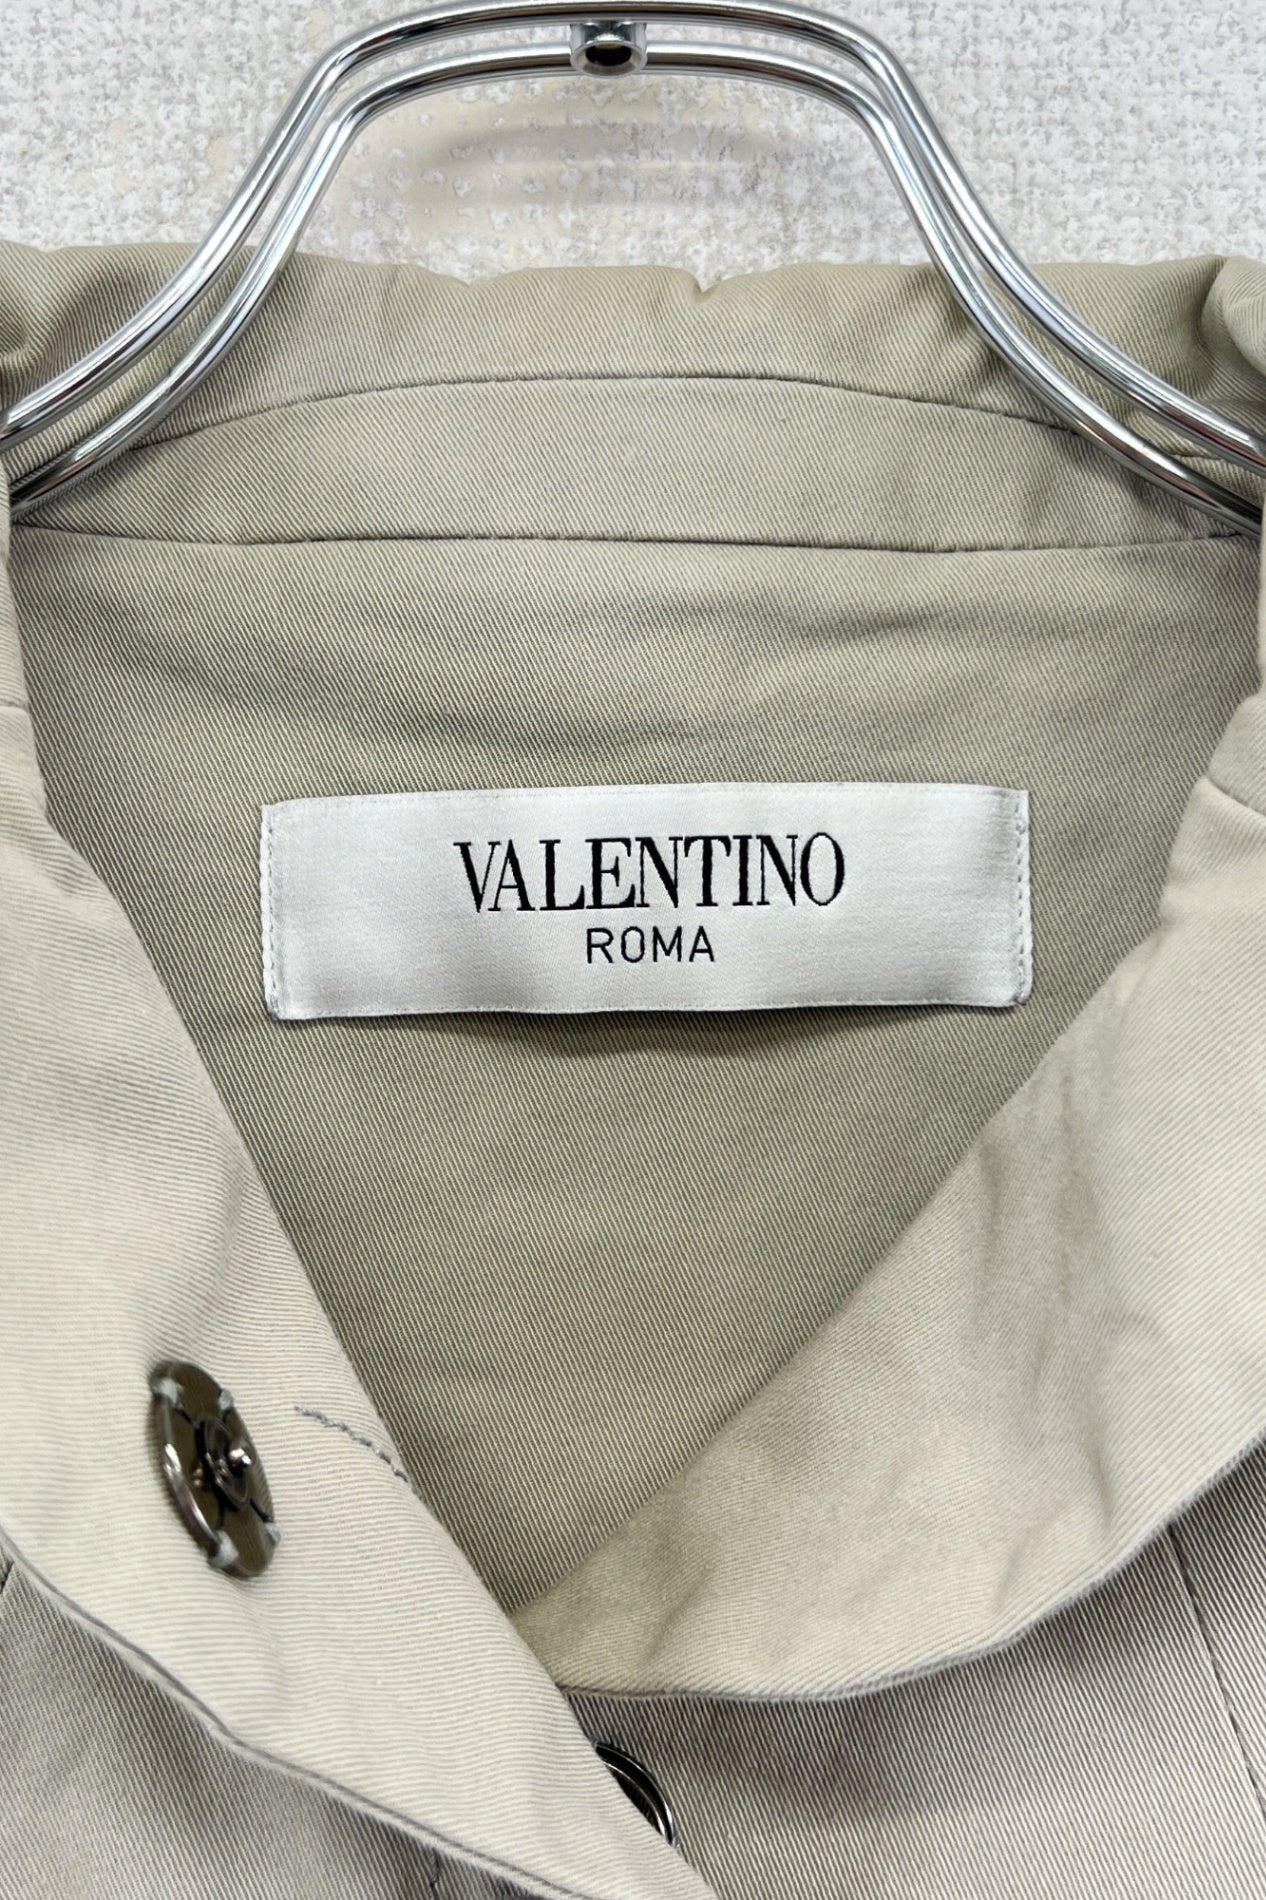 Made in ITALY VALENTINO ROMA jacket